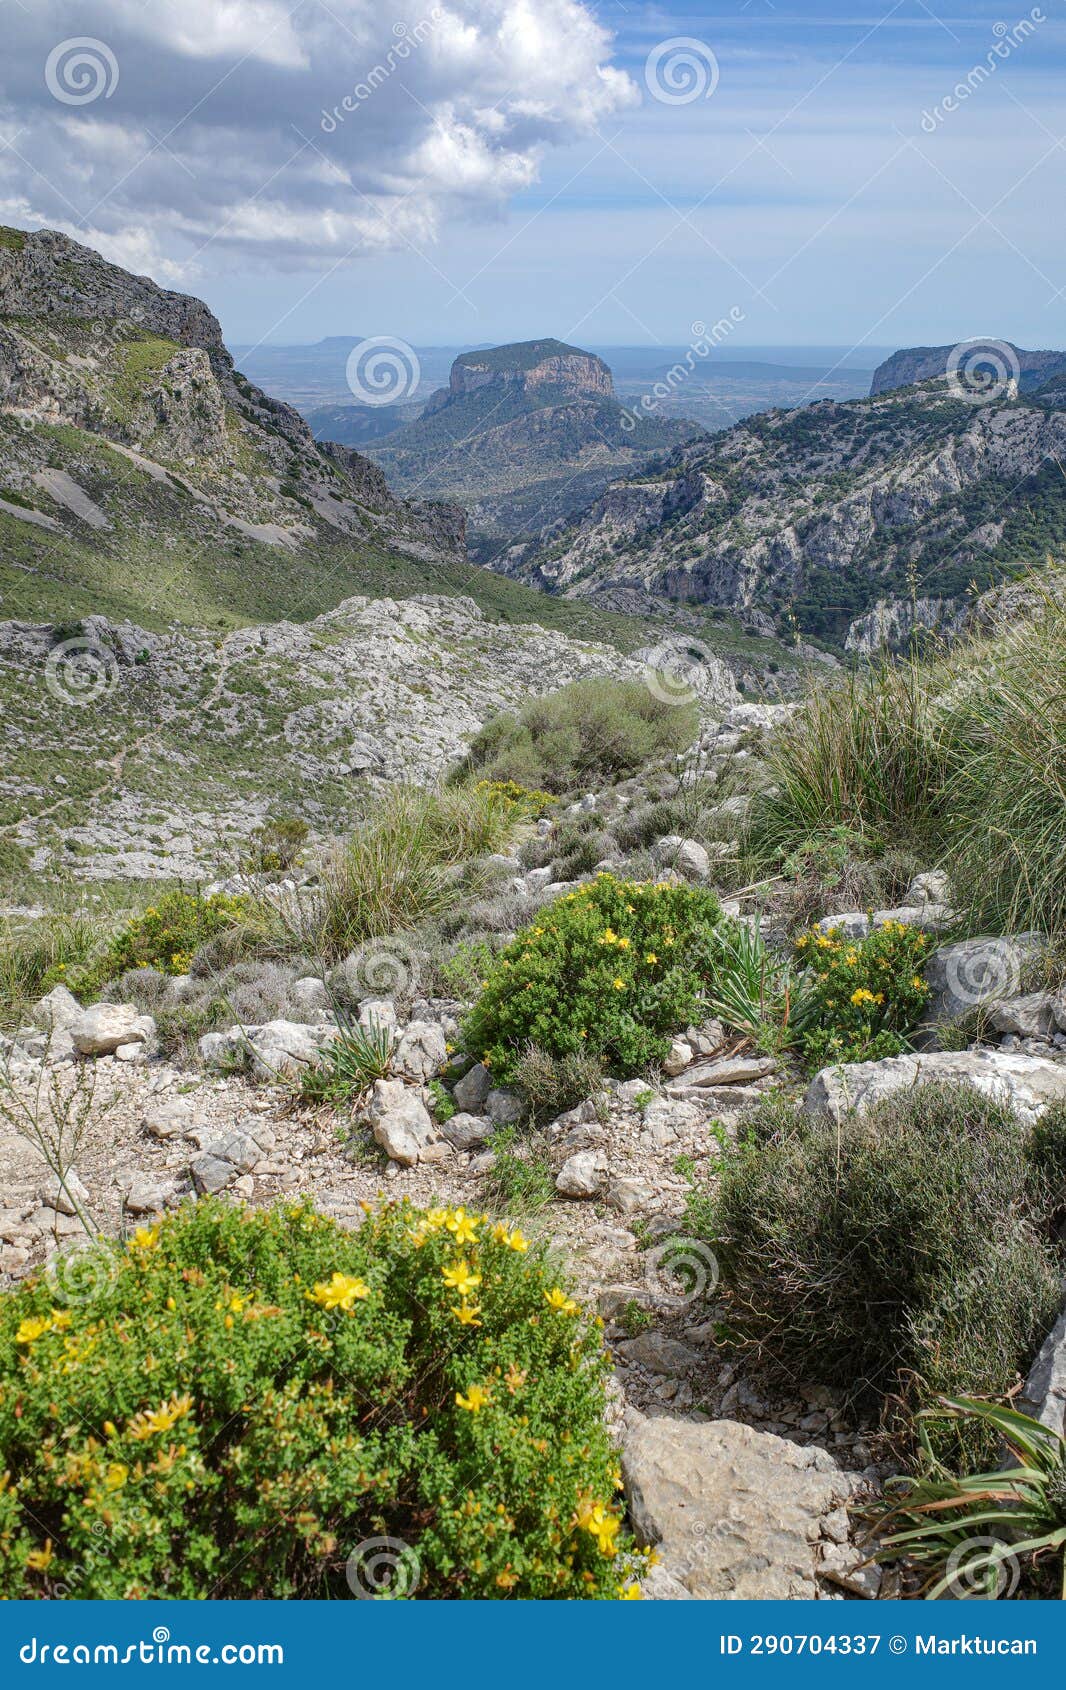 mallorca, spain - 12 june, 2023: views along the gr221 trail through the tramuntana mountains, mallorca